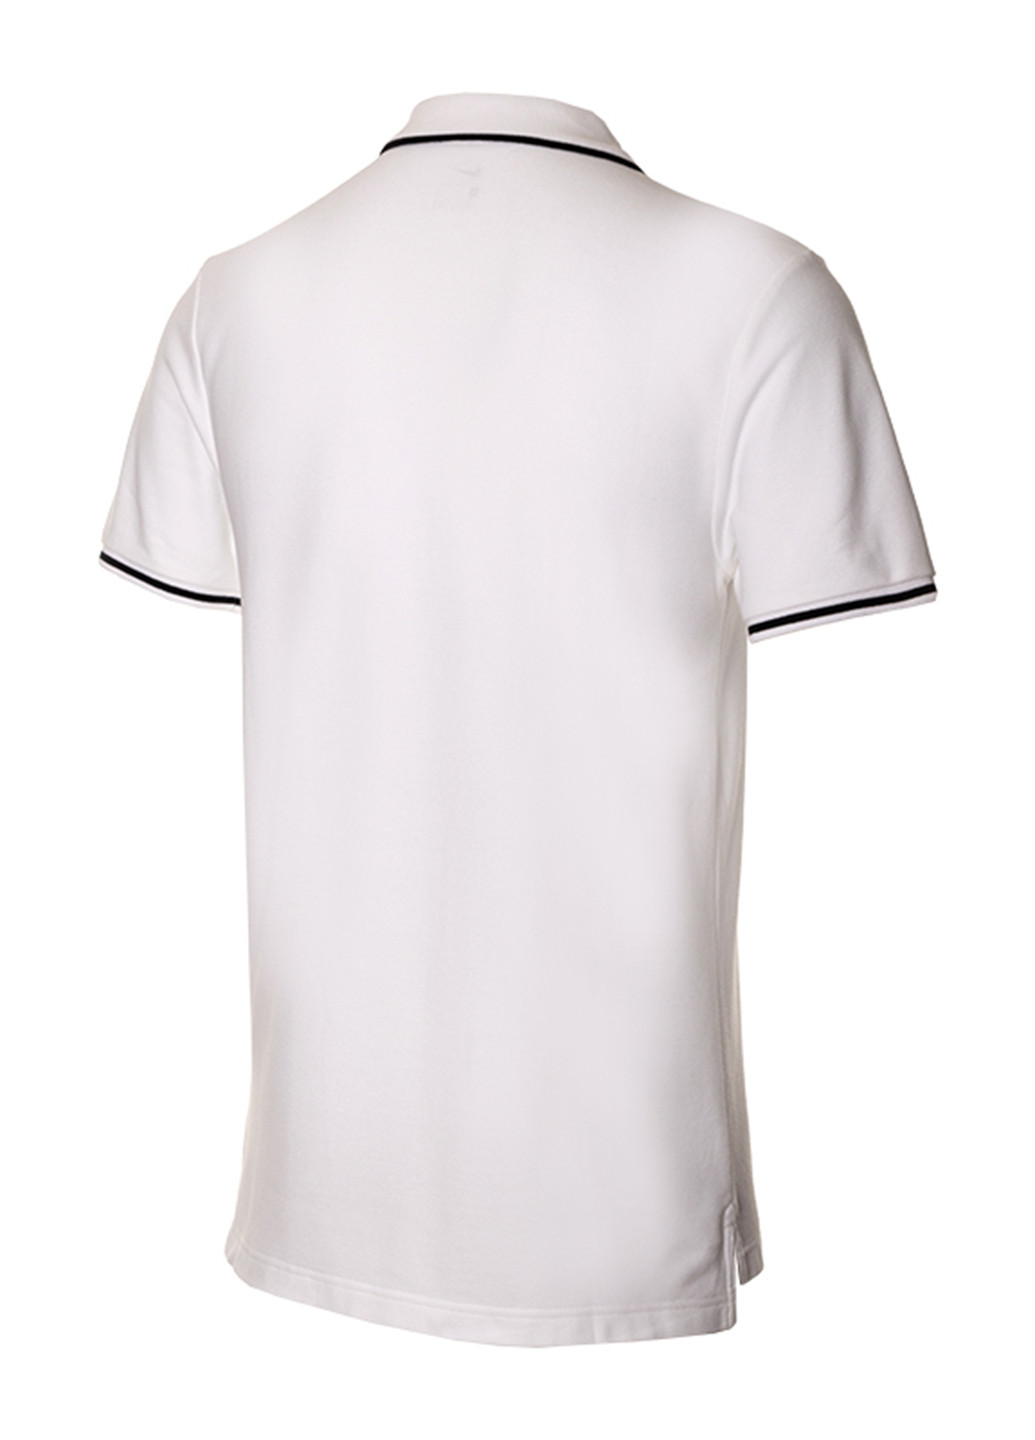 Белая футболка-поло для мужчин Nike однотонная